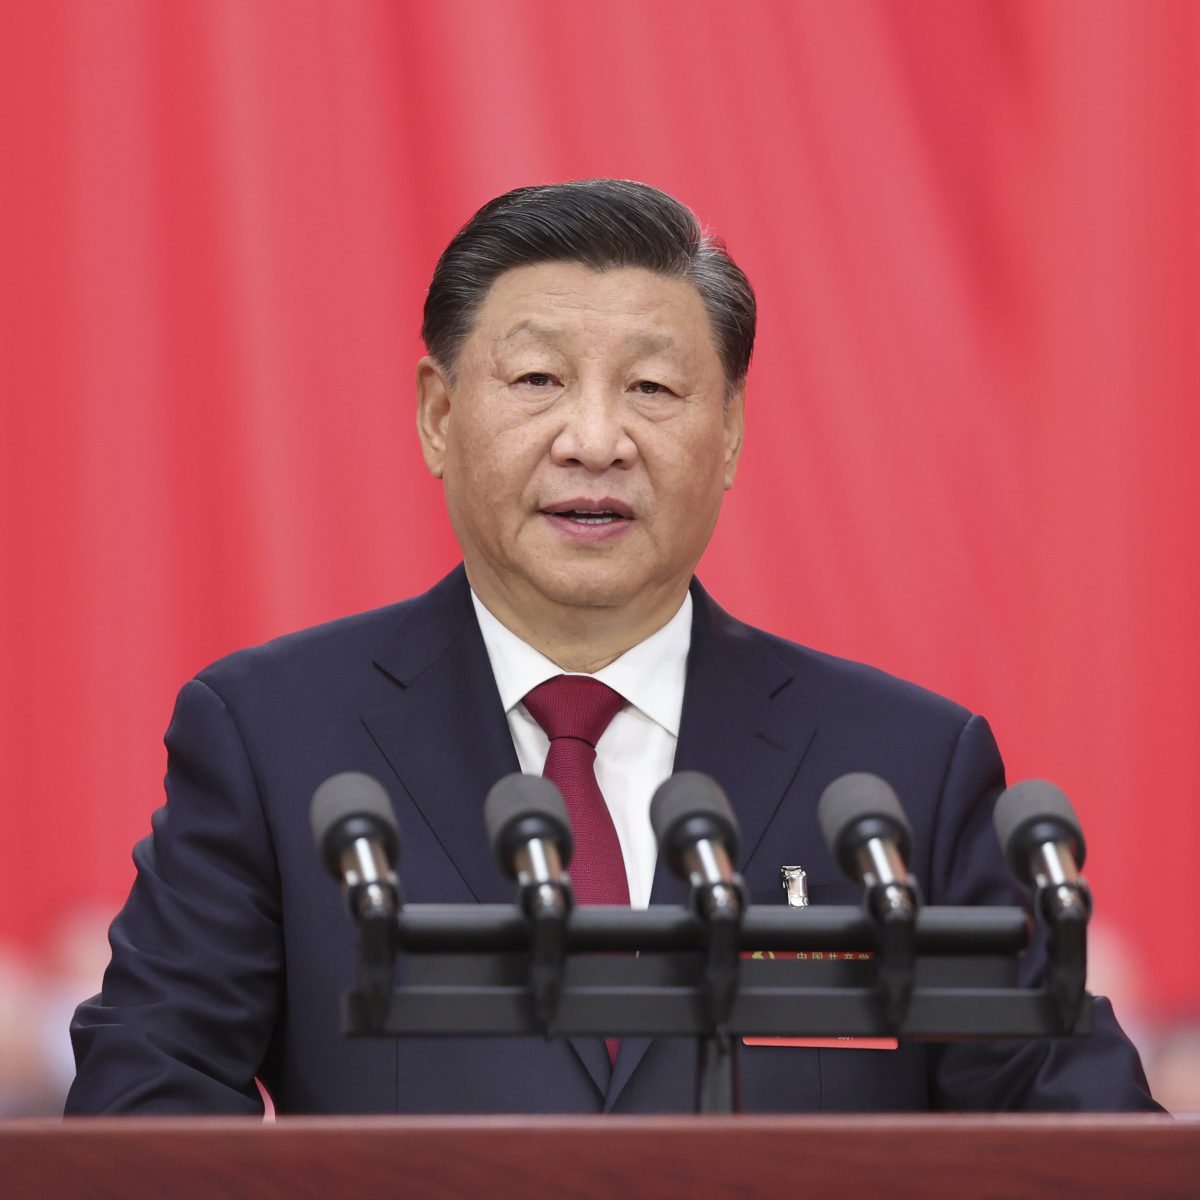 El presidente chino realizará discurso por la paz en Ucrania en aniversario guerra